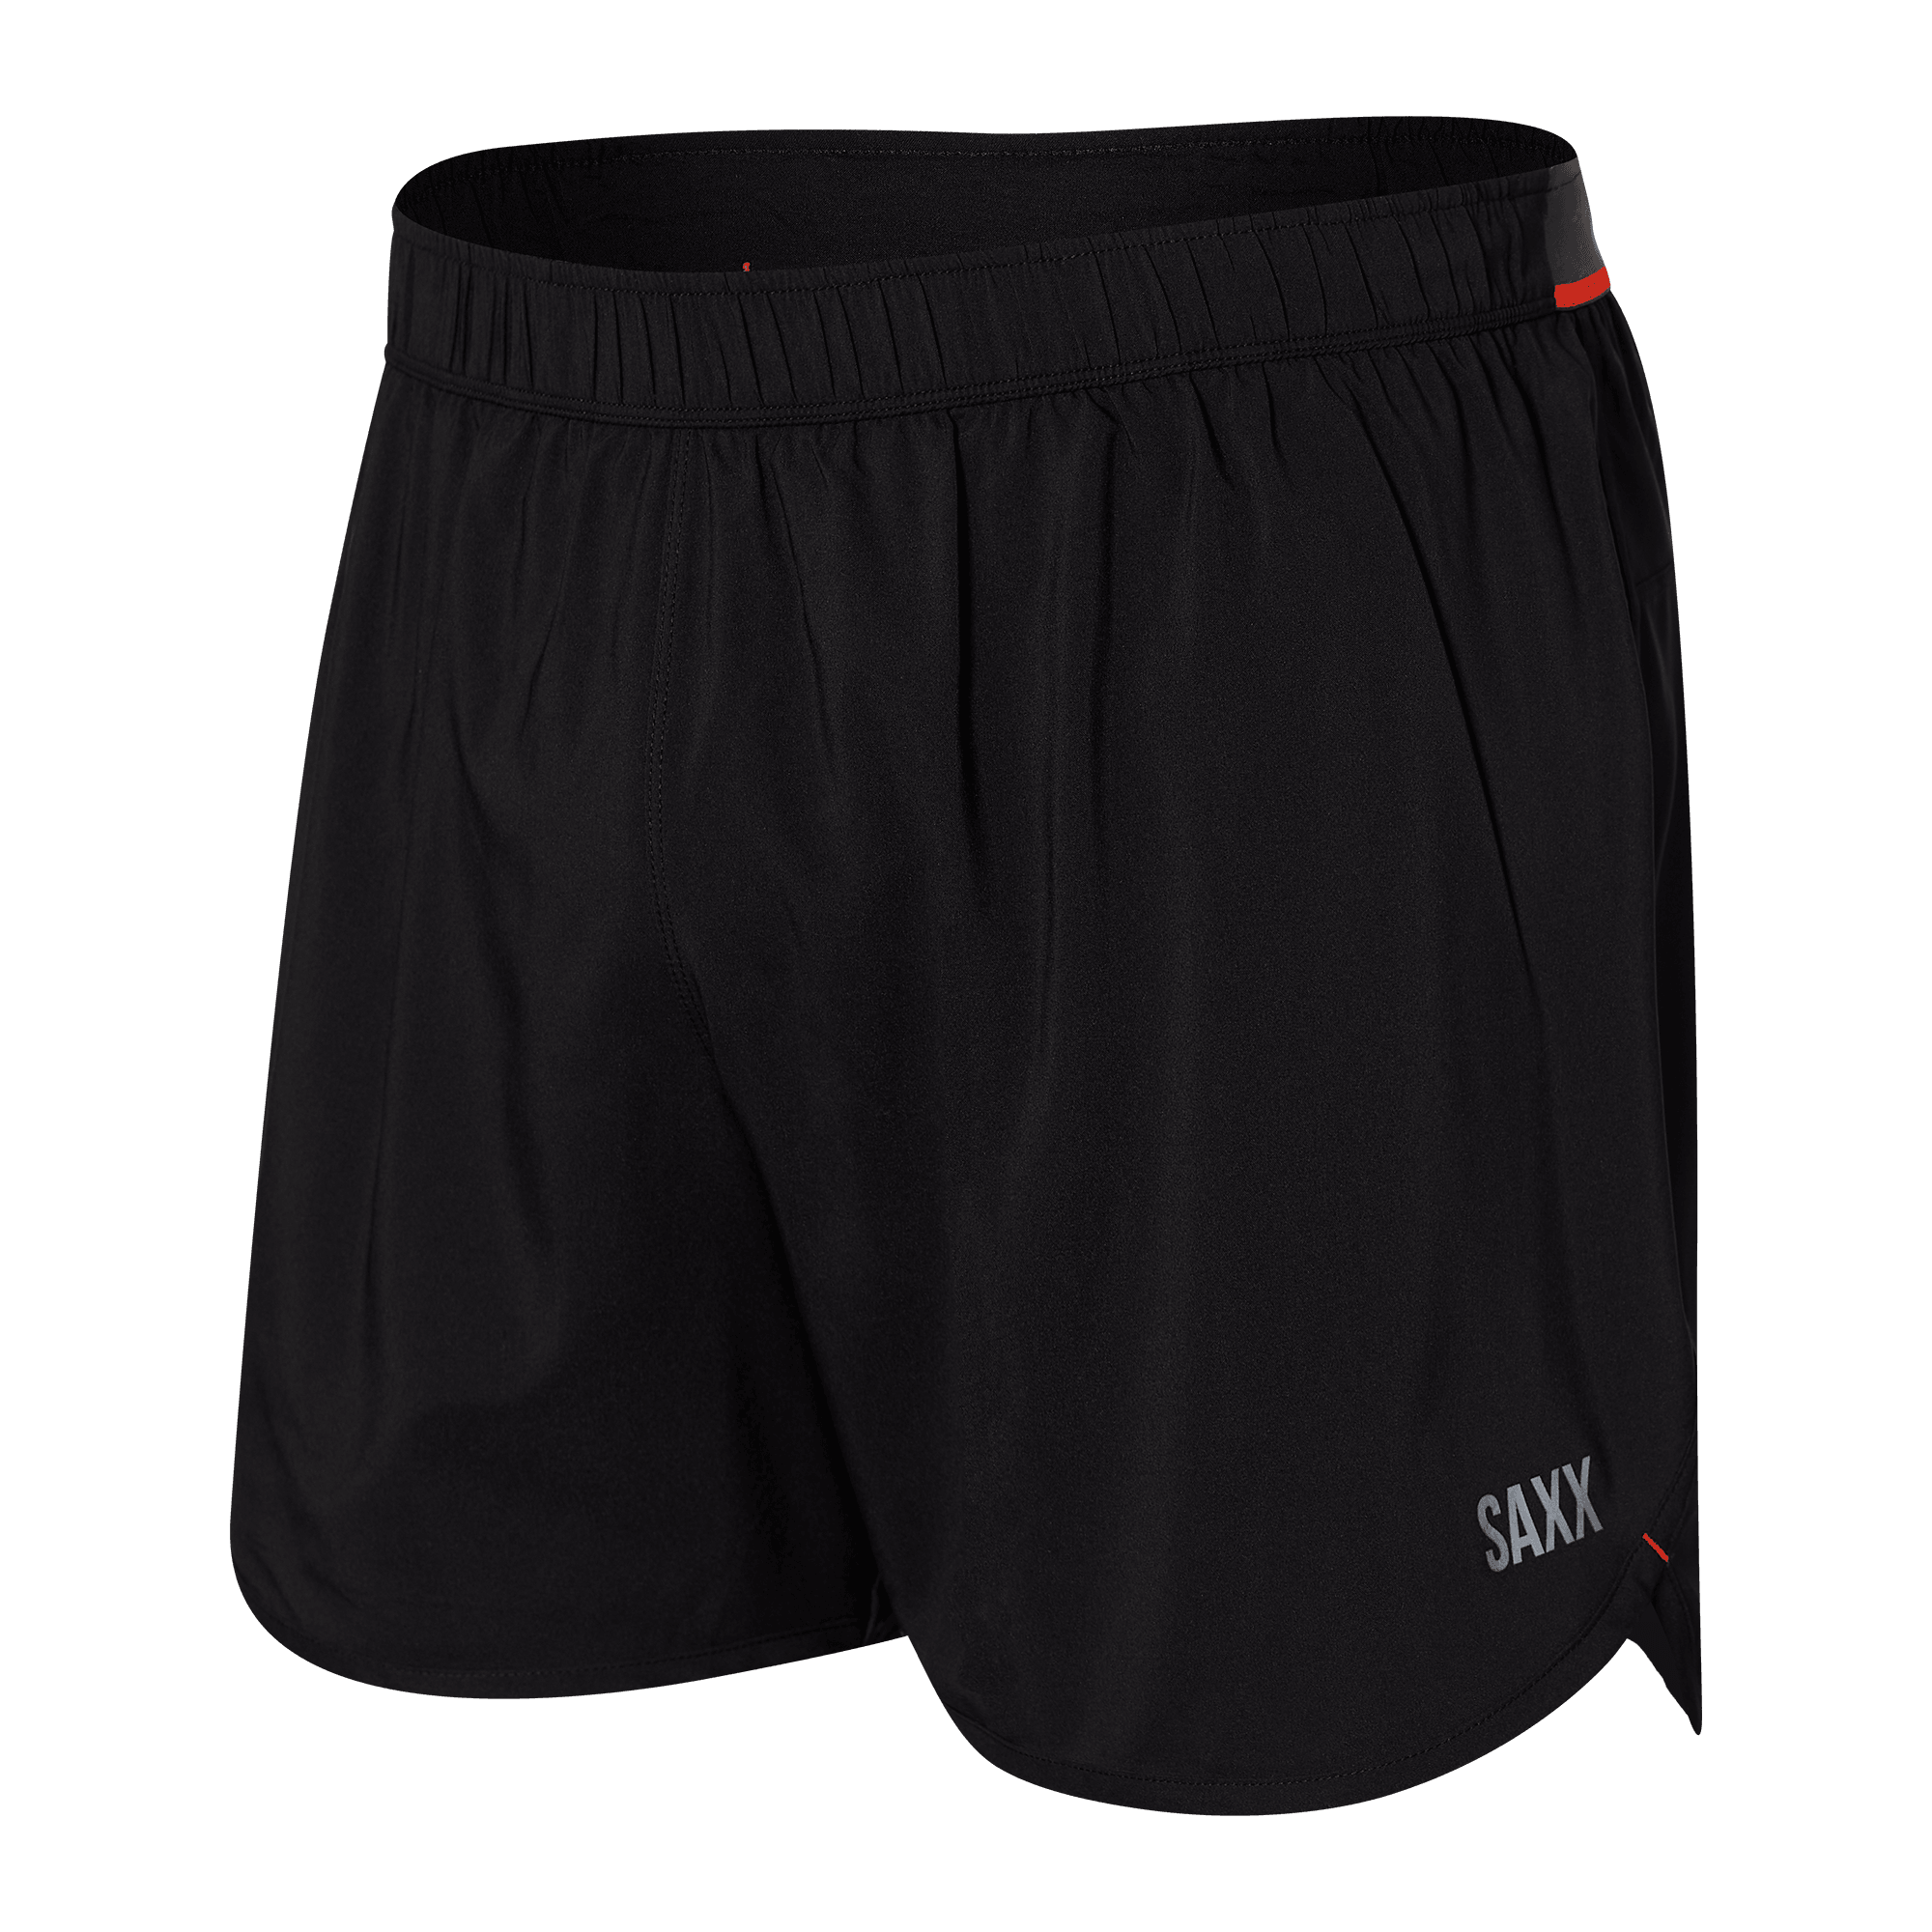 Saxx "Hightail 2N1" Black 5" Shorts - Lion's Lair Boutique - 2X, continuity, Hightail, L, M, RUN, S, Saxx, XL, XS - Saxx